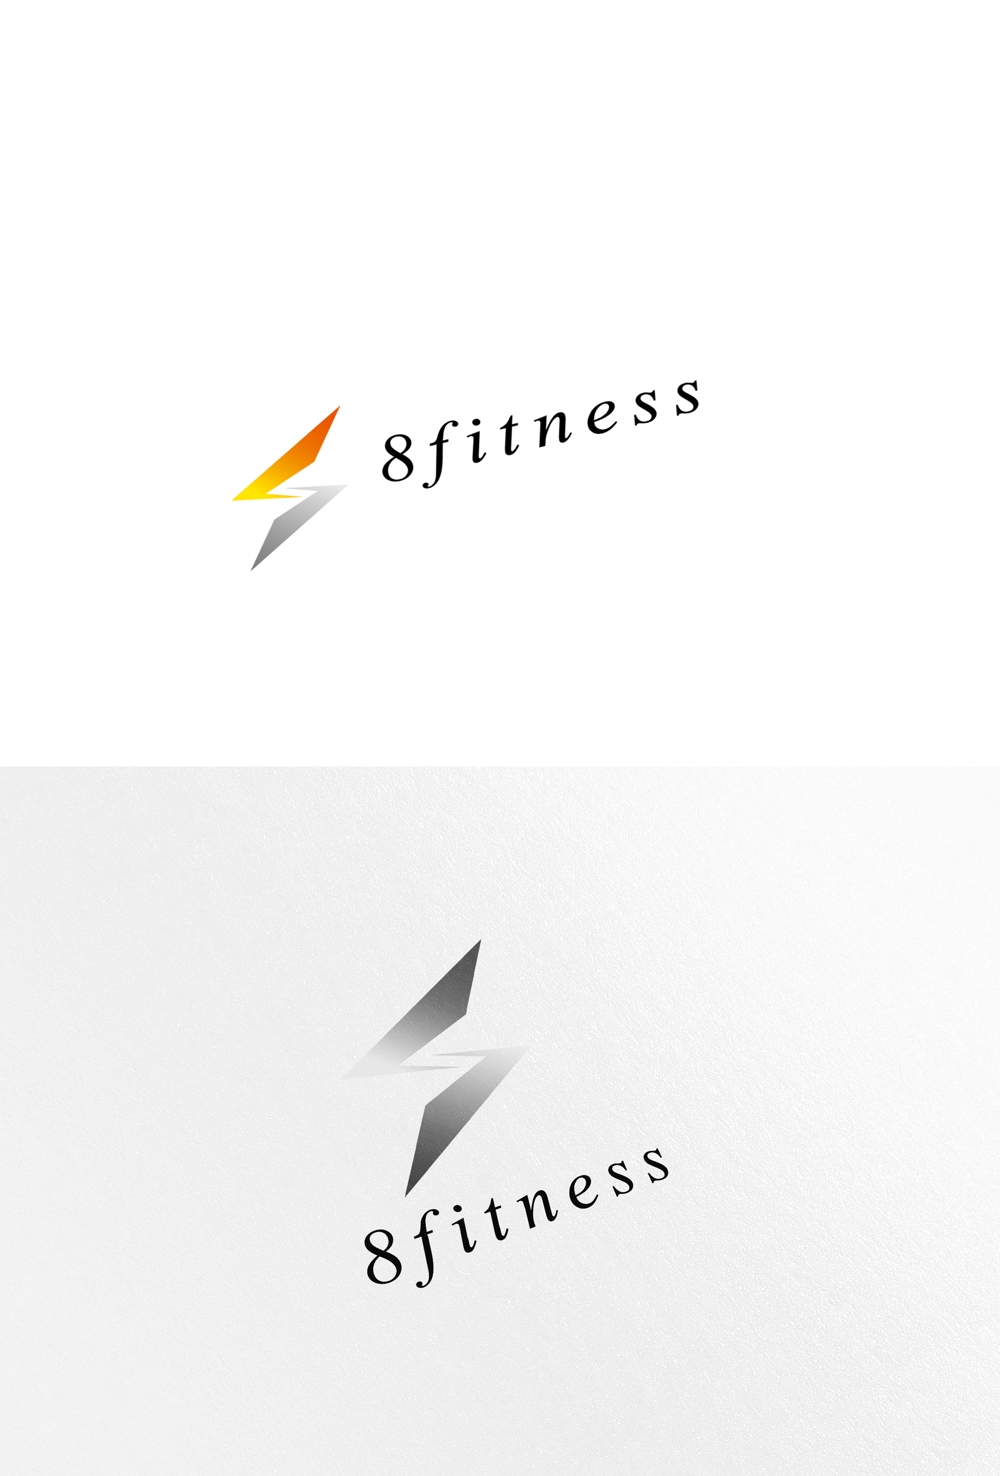 パーソナルトレーニングジム「8fitness」のロゴ